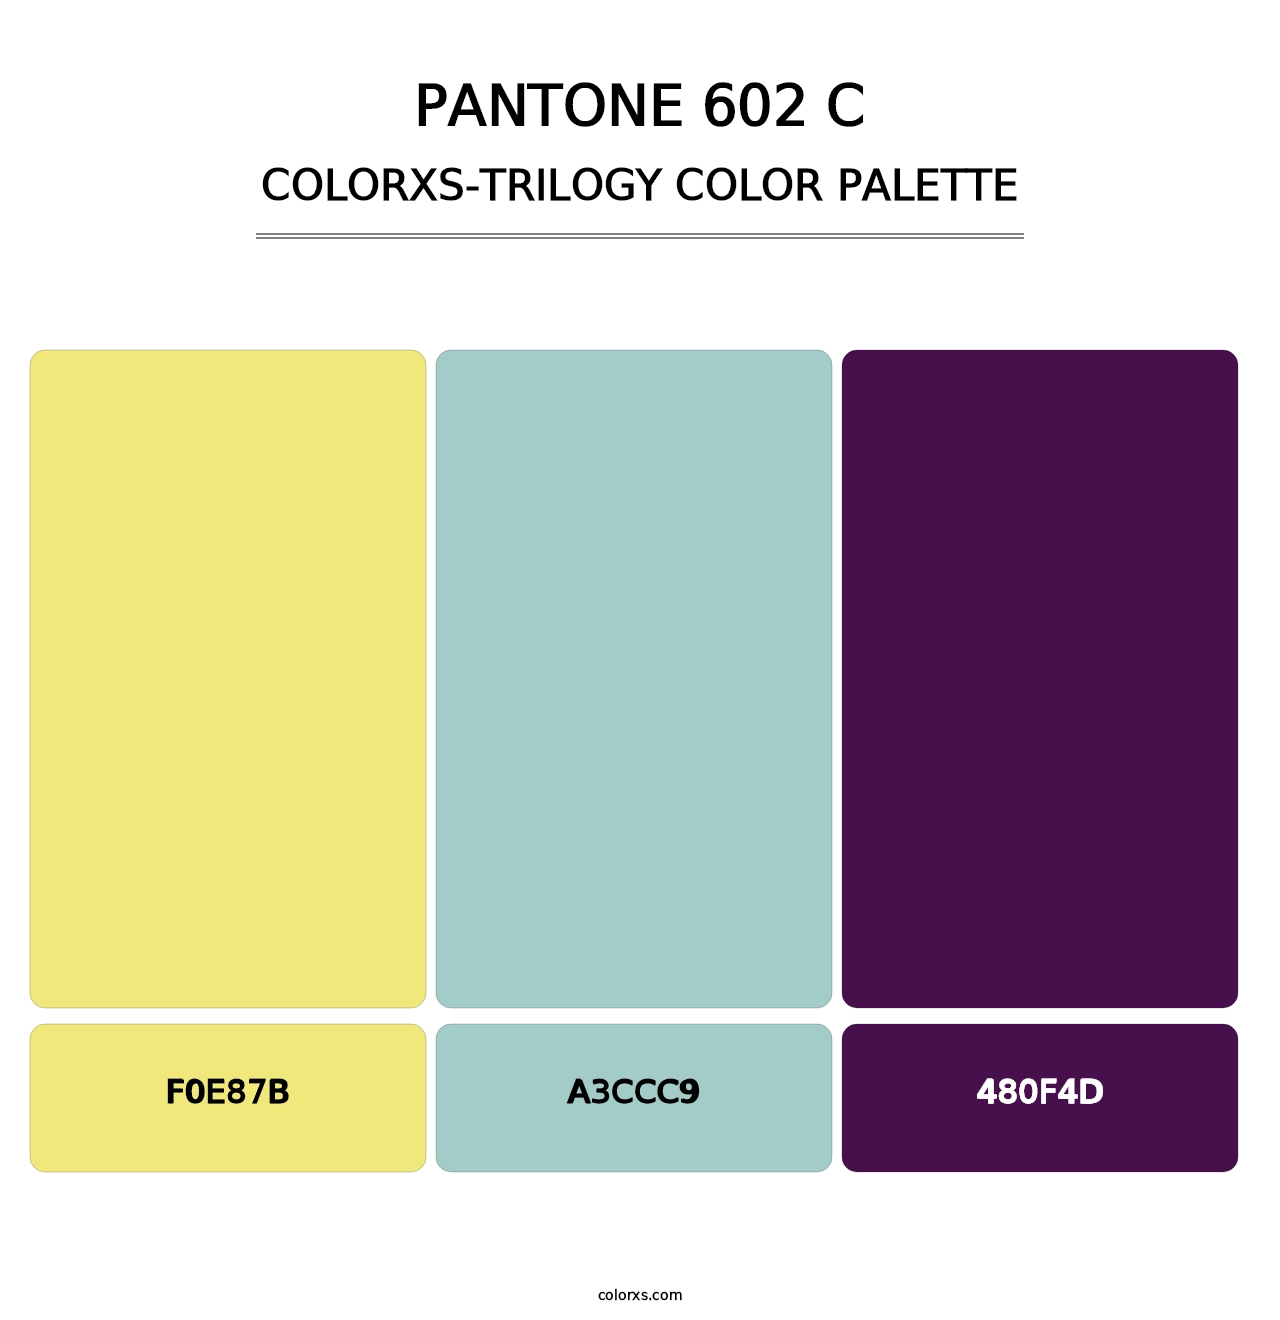 PANTONE 602 C - Colorxs Trilogy Palette